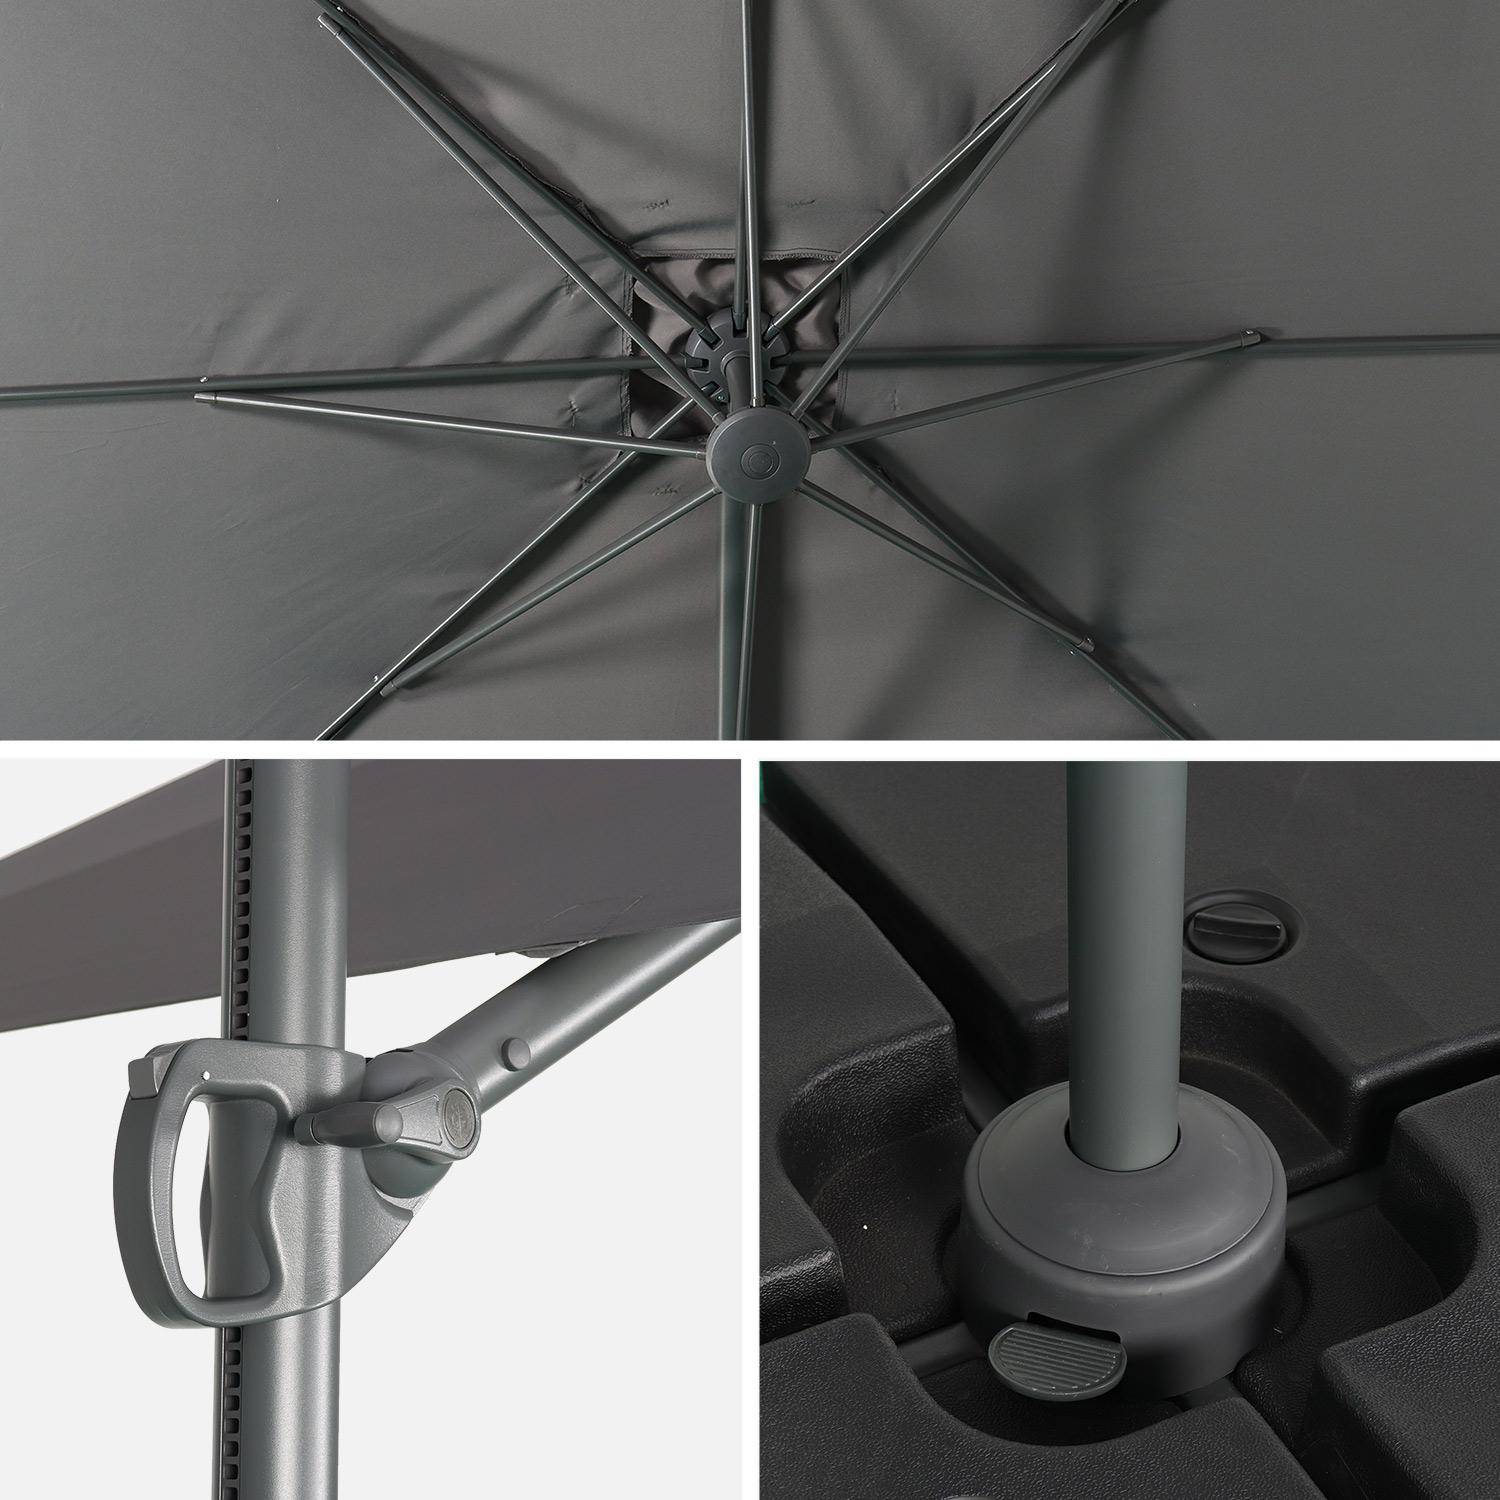 Parasol déporté carré 250 x 250 cm – Andernos – gris – parasol exporté, inclinable, rabattable et rotatif à 360° Photo5